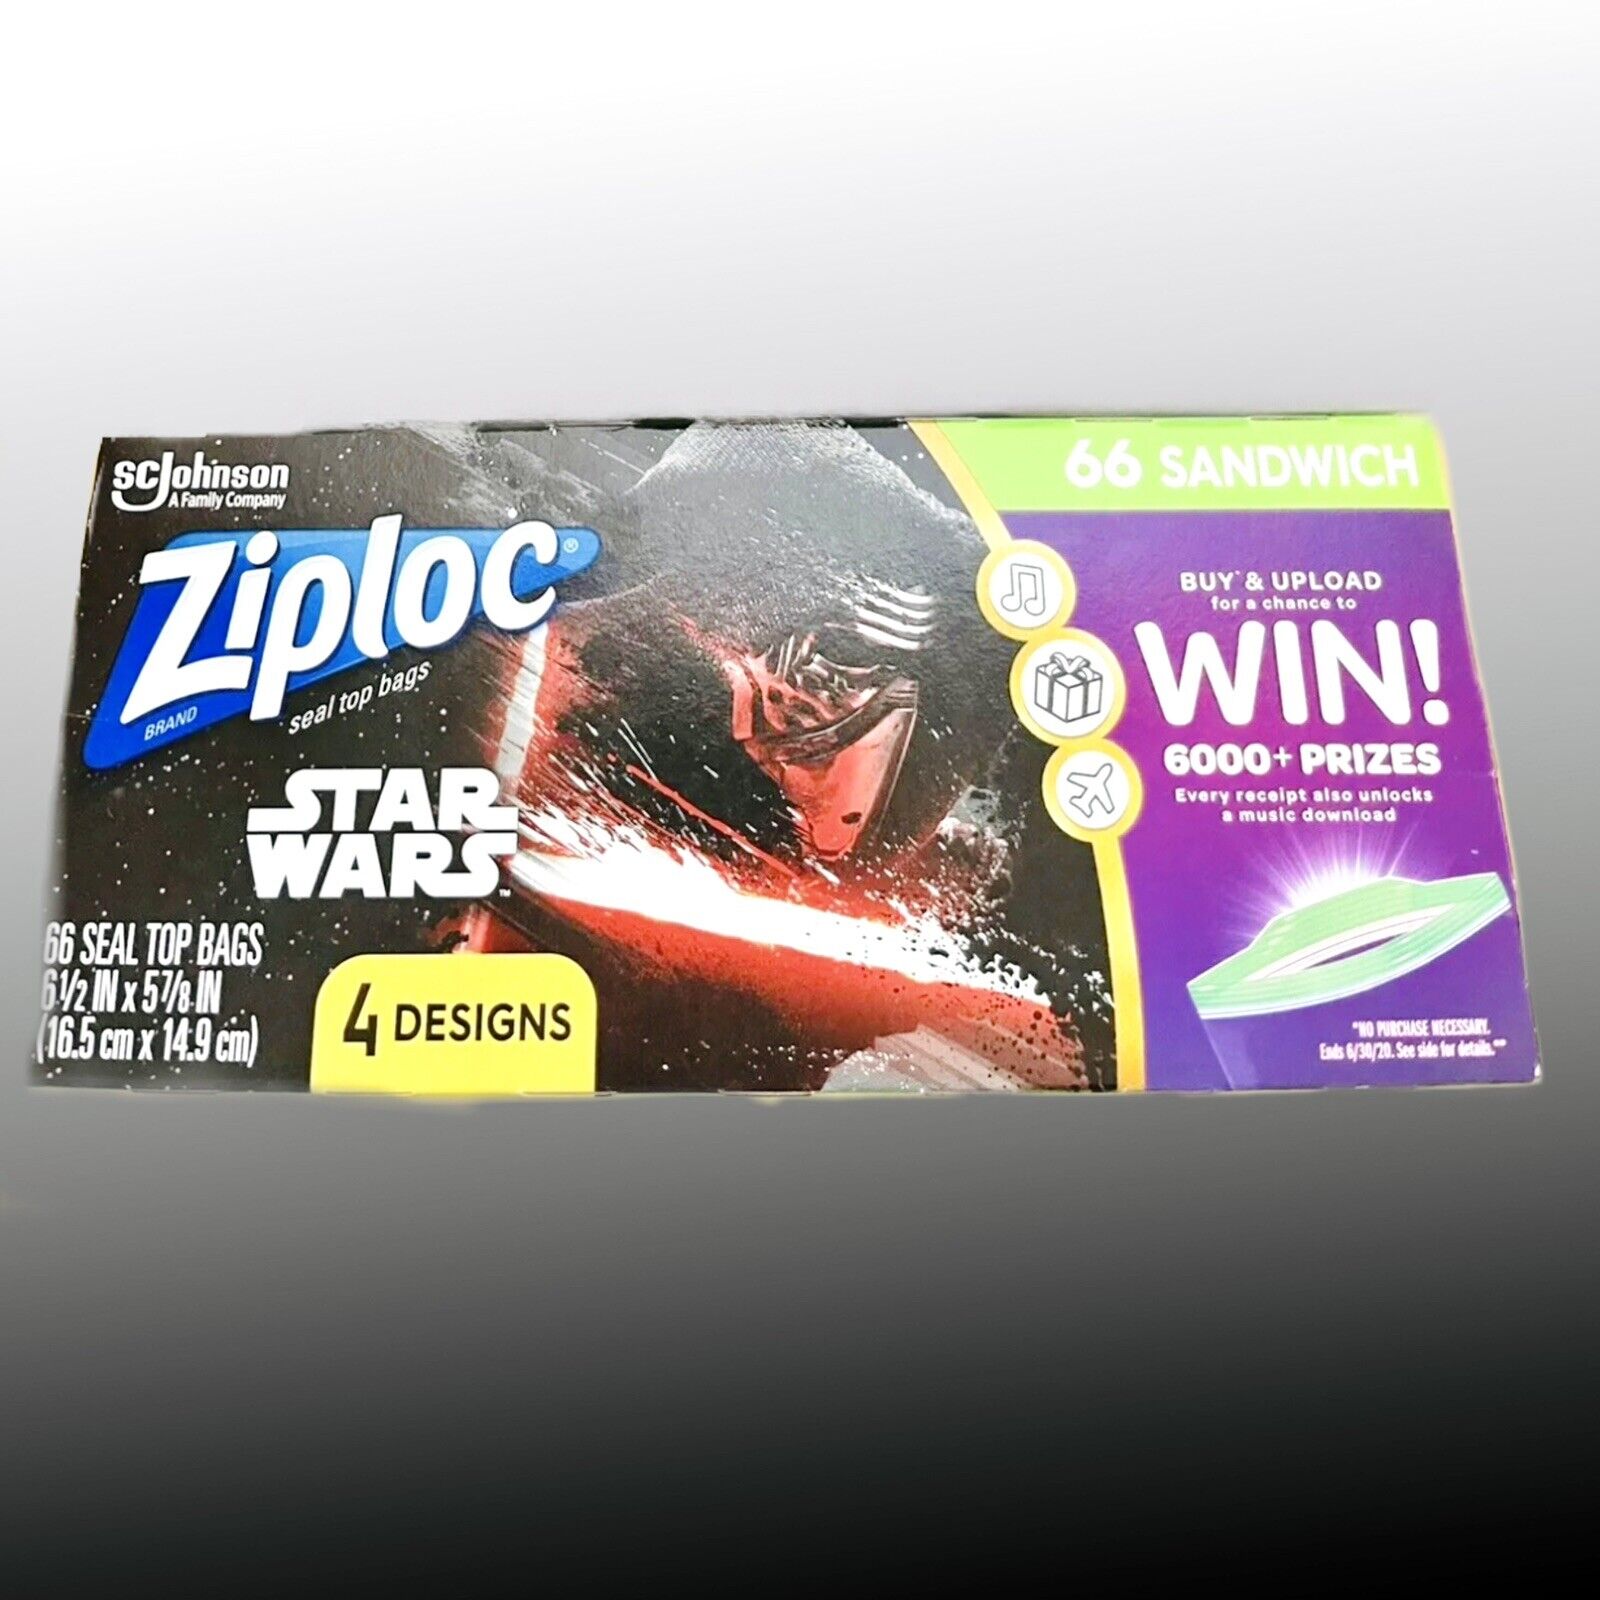 Ziploc Storage Bags, Slider, Quart, Star Wars 30 Ea, Food Storage Bags